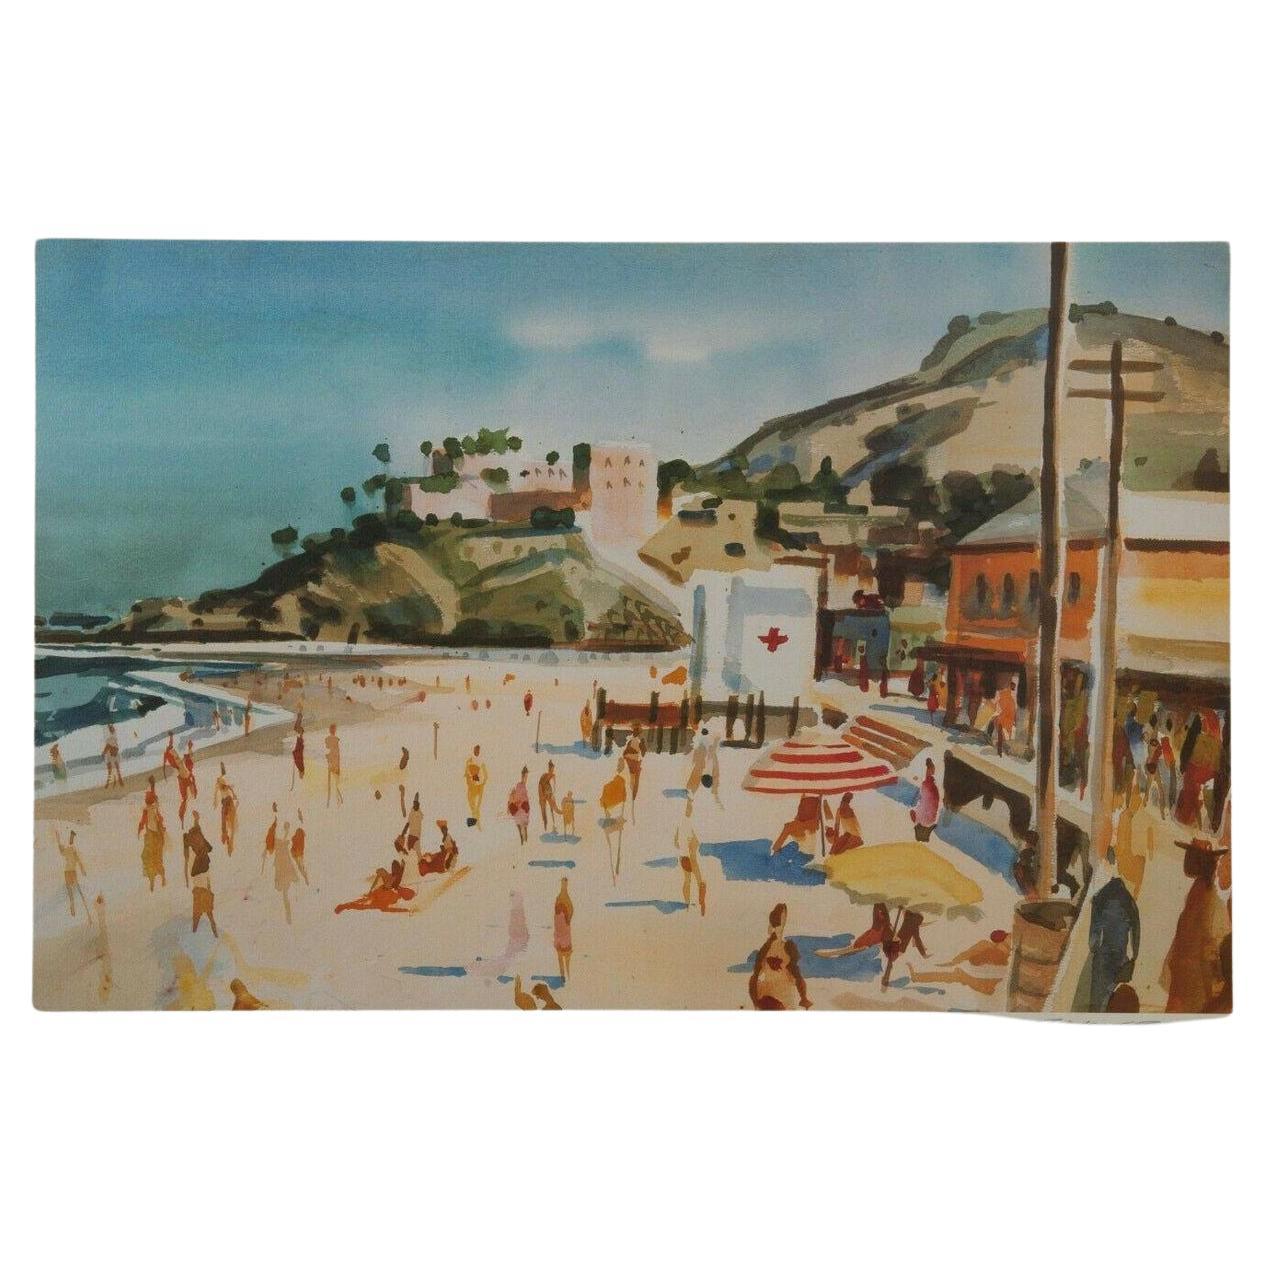 Lithographie « Main Beach Laguna » de Milford Zornes, édition limitée 62 sur 250 signée